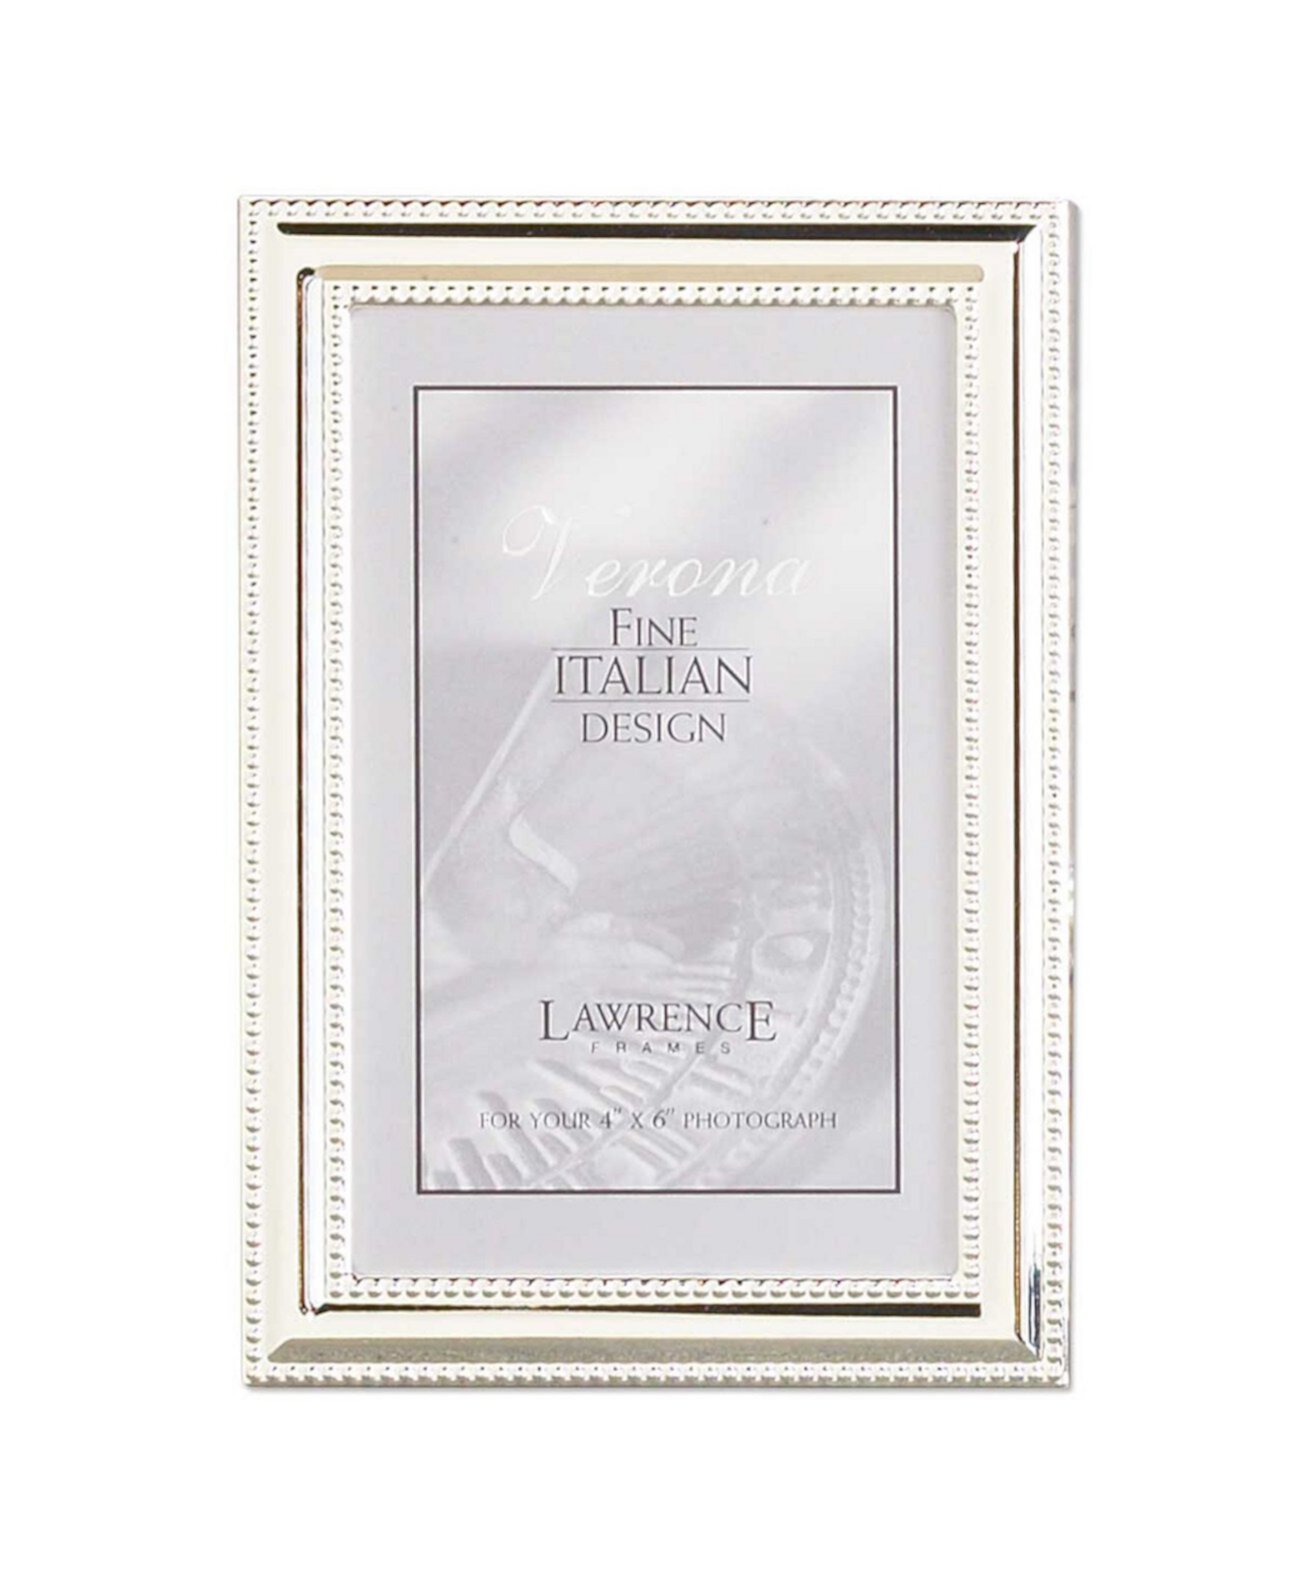 Металлическая рамка для картины Серебряная пластина с тонкой вышивкой - 4 "x 6" Lawrence Frames